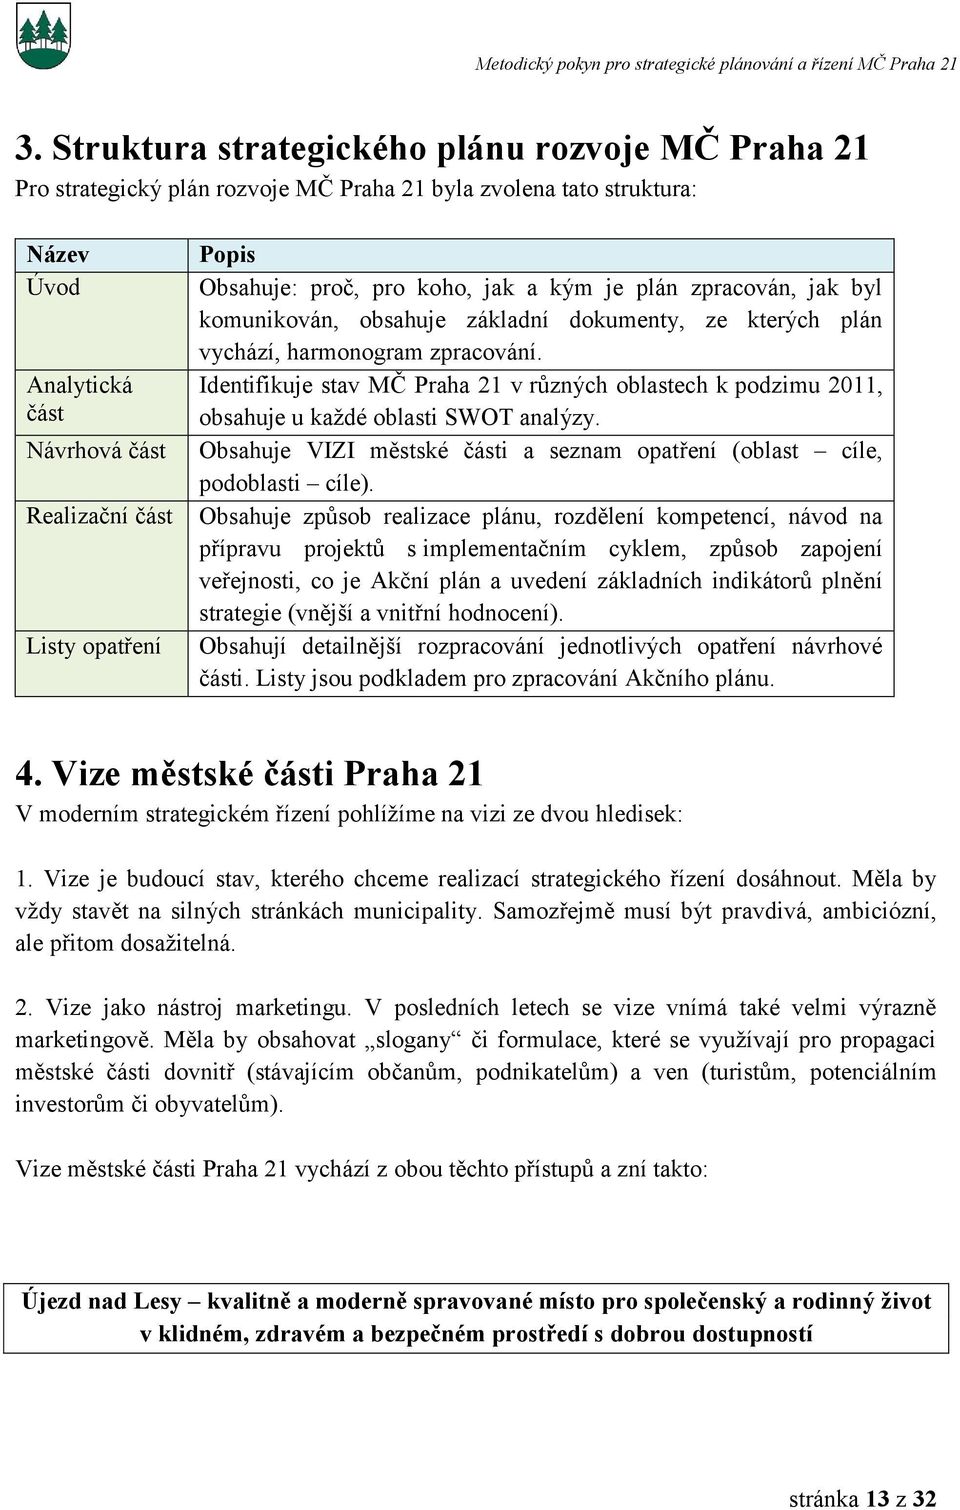 Identifikuje stav MČ Praha 21 v různých oblastech k podzimu 2011, obsahuje u každé oblasti SWOT analýzy. Obsahuje VIZI městské části a seznam opatření (oblast cíle, podoblasti cíle).